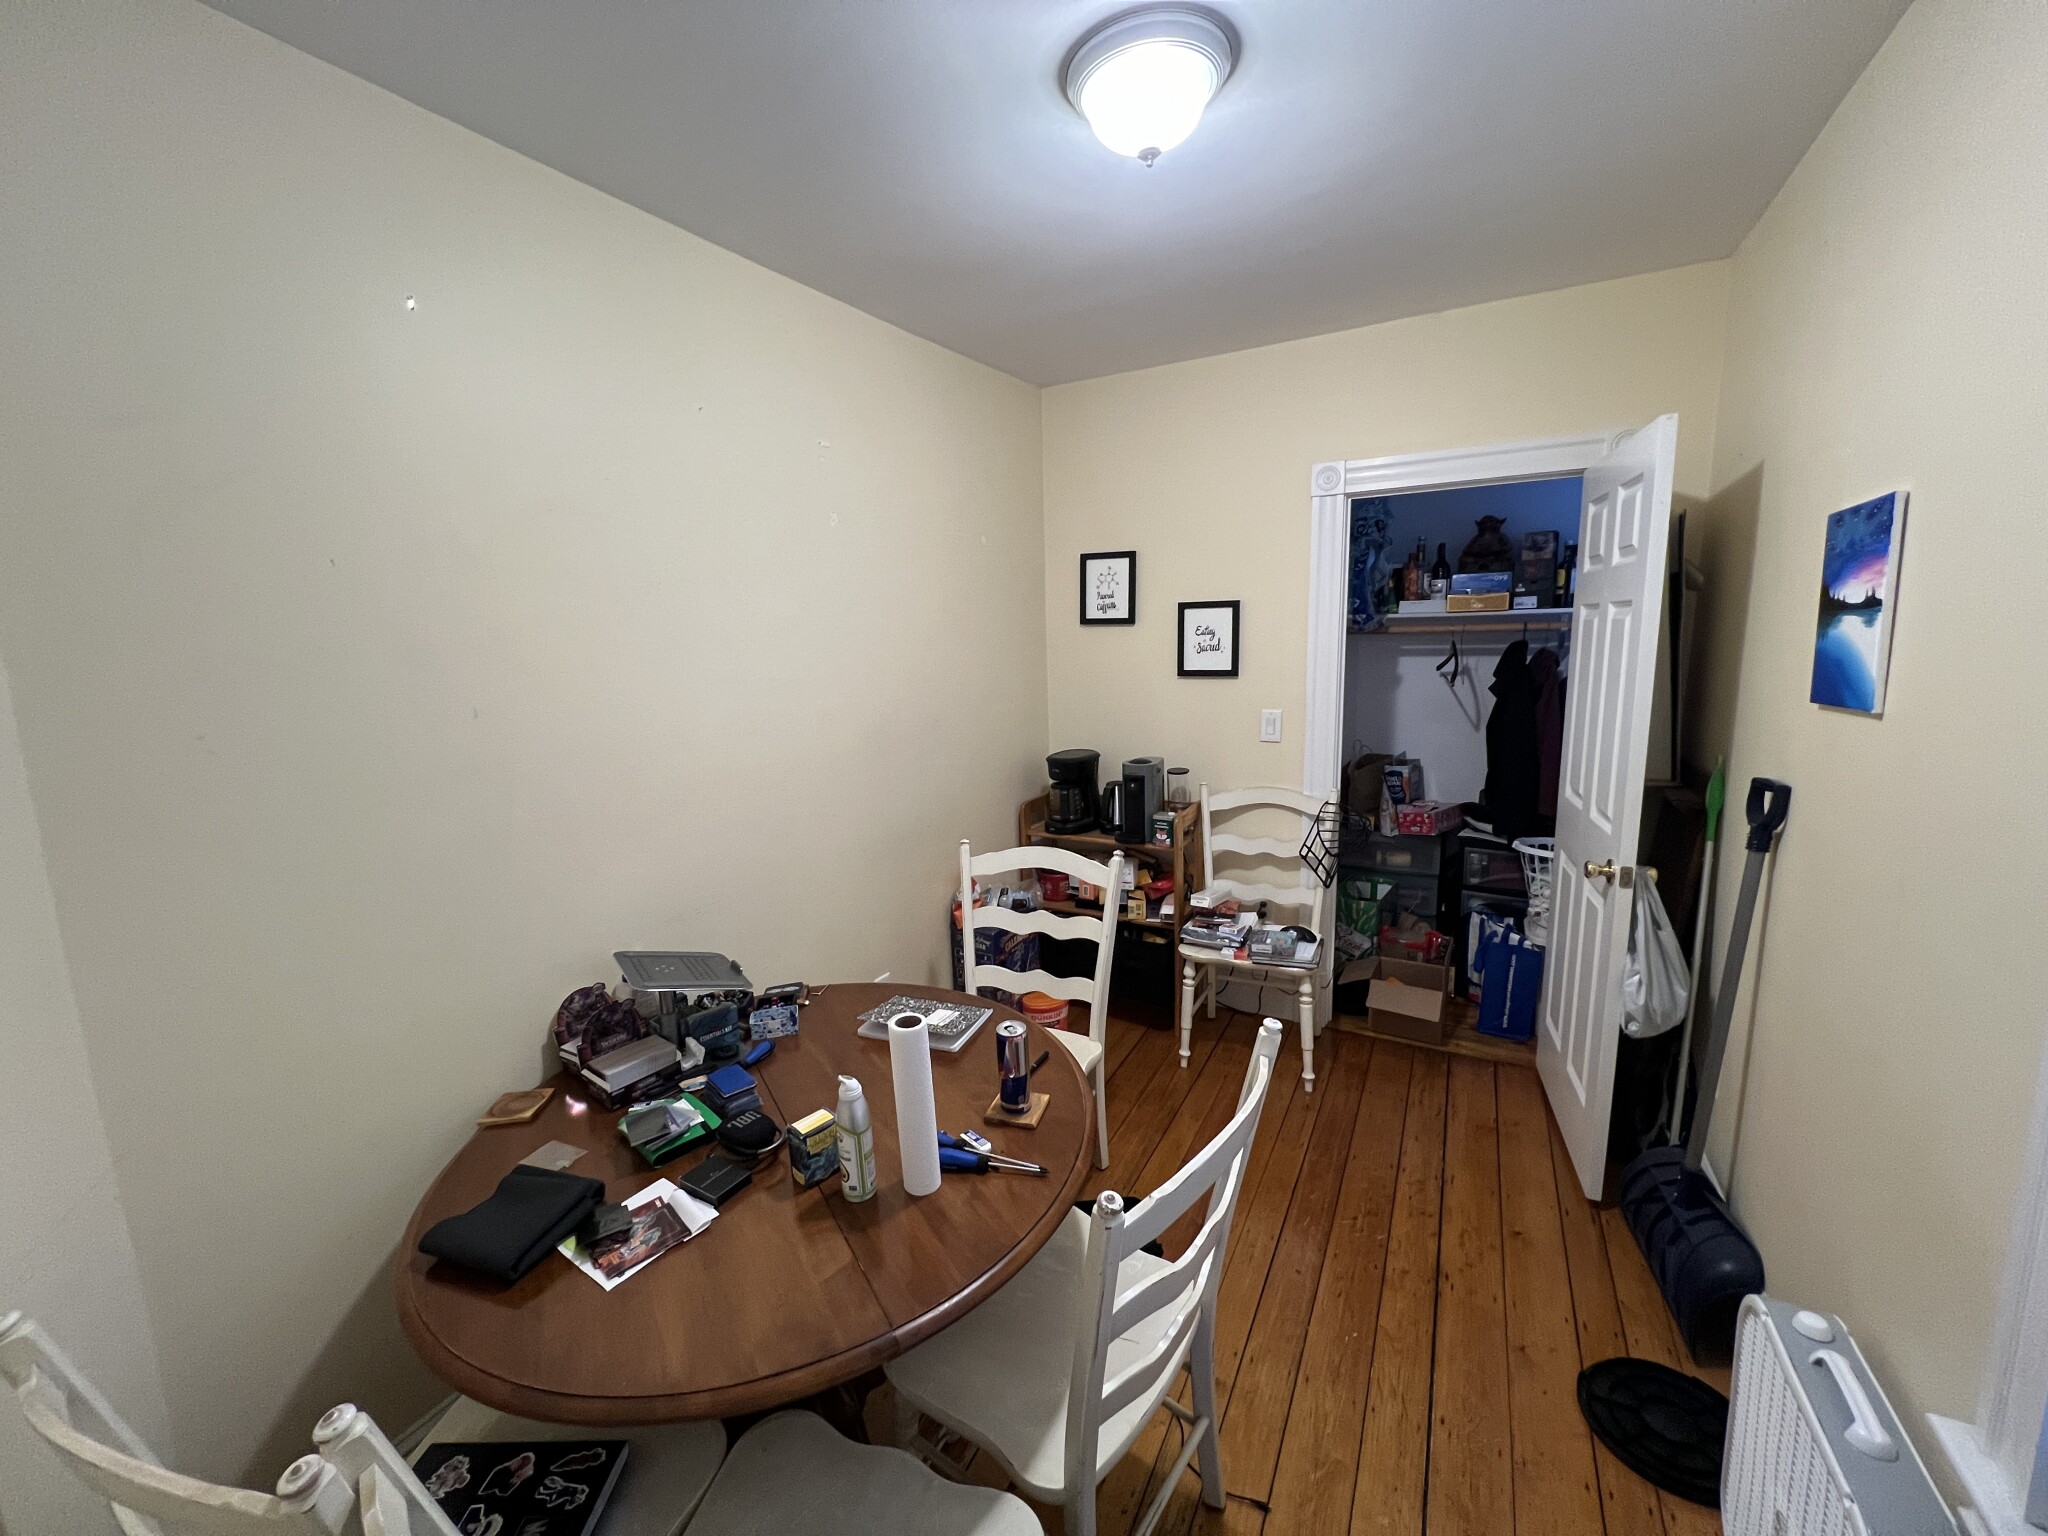 Photos of apartment on White Street Pl.,Cambridge MA 02140